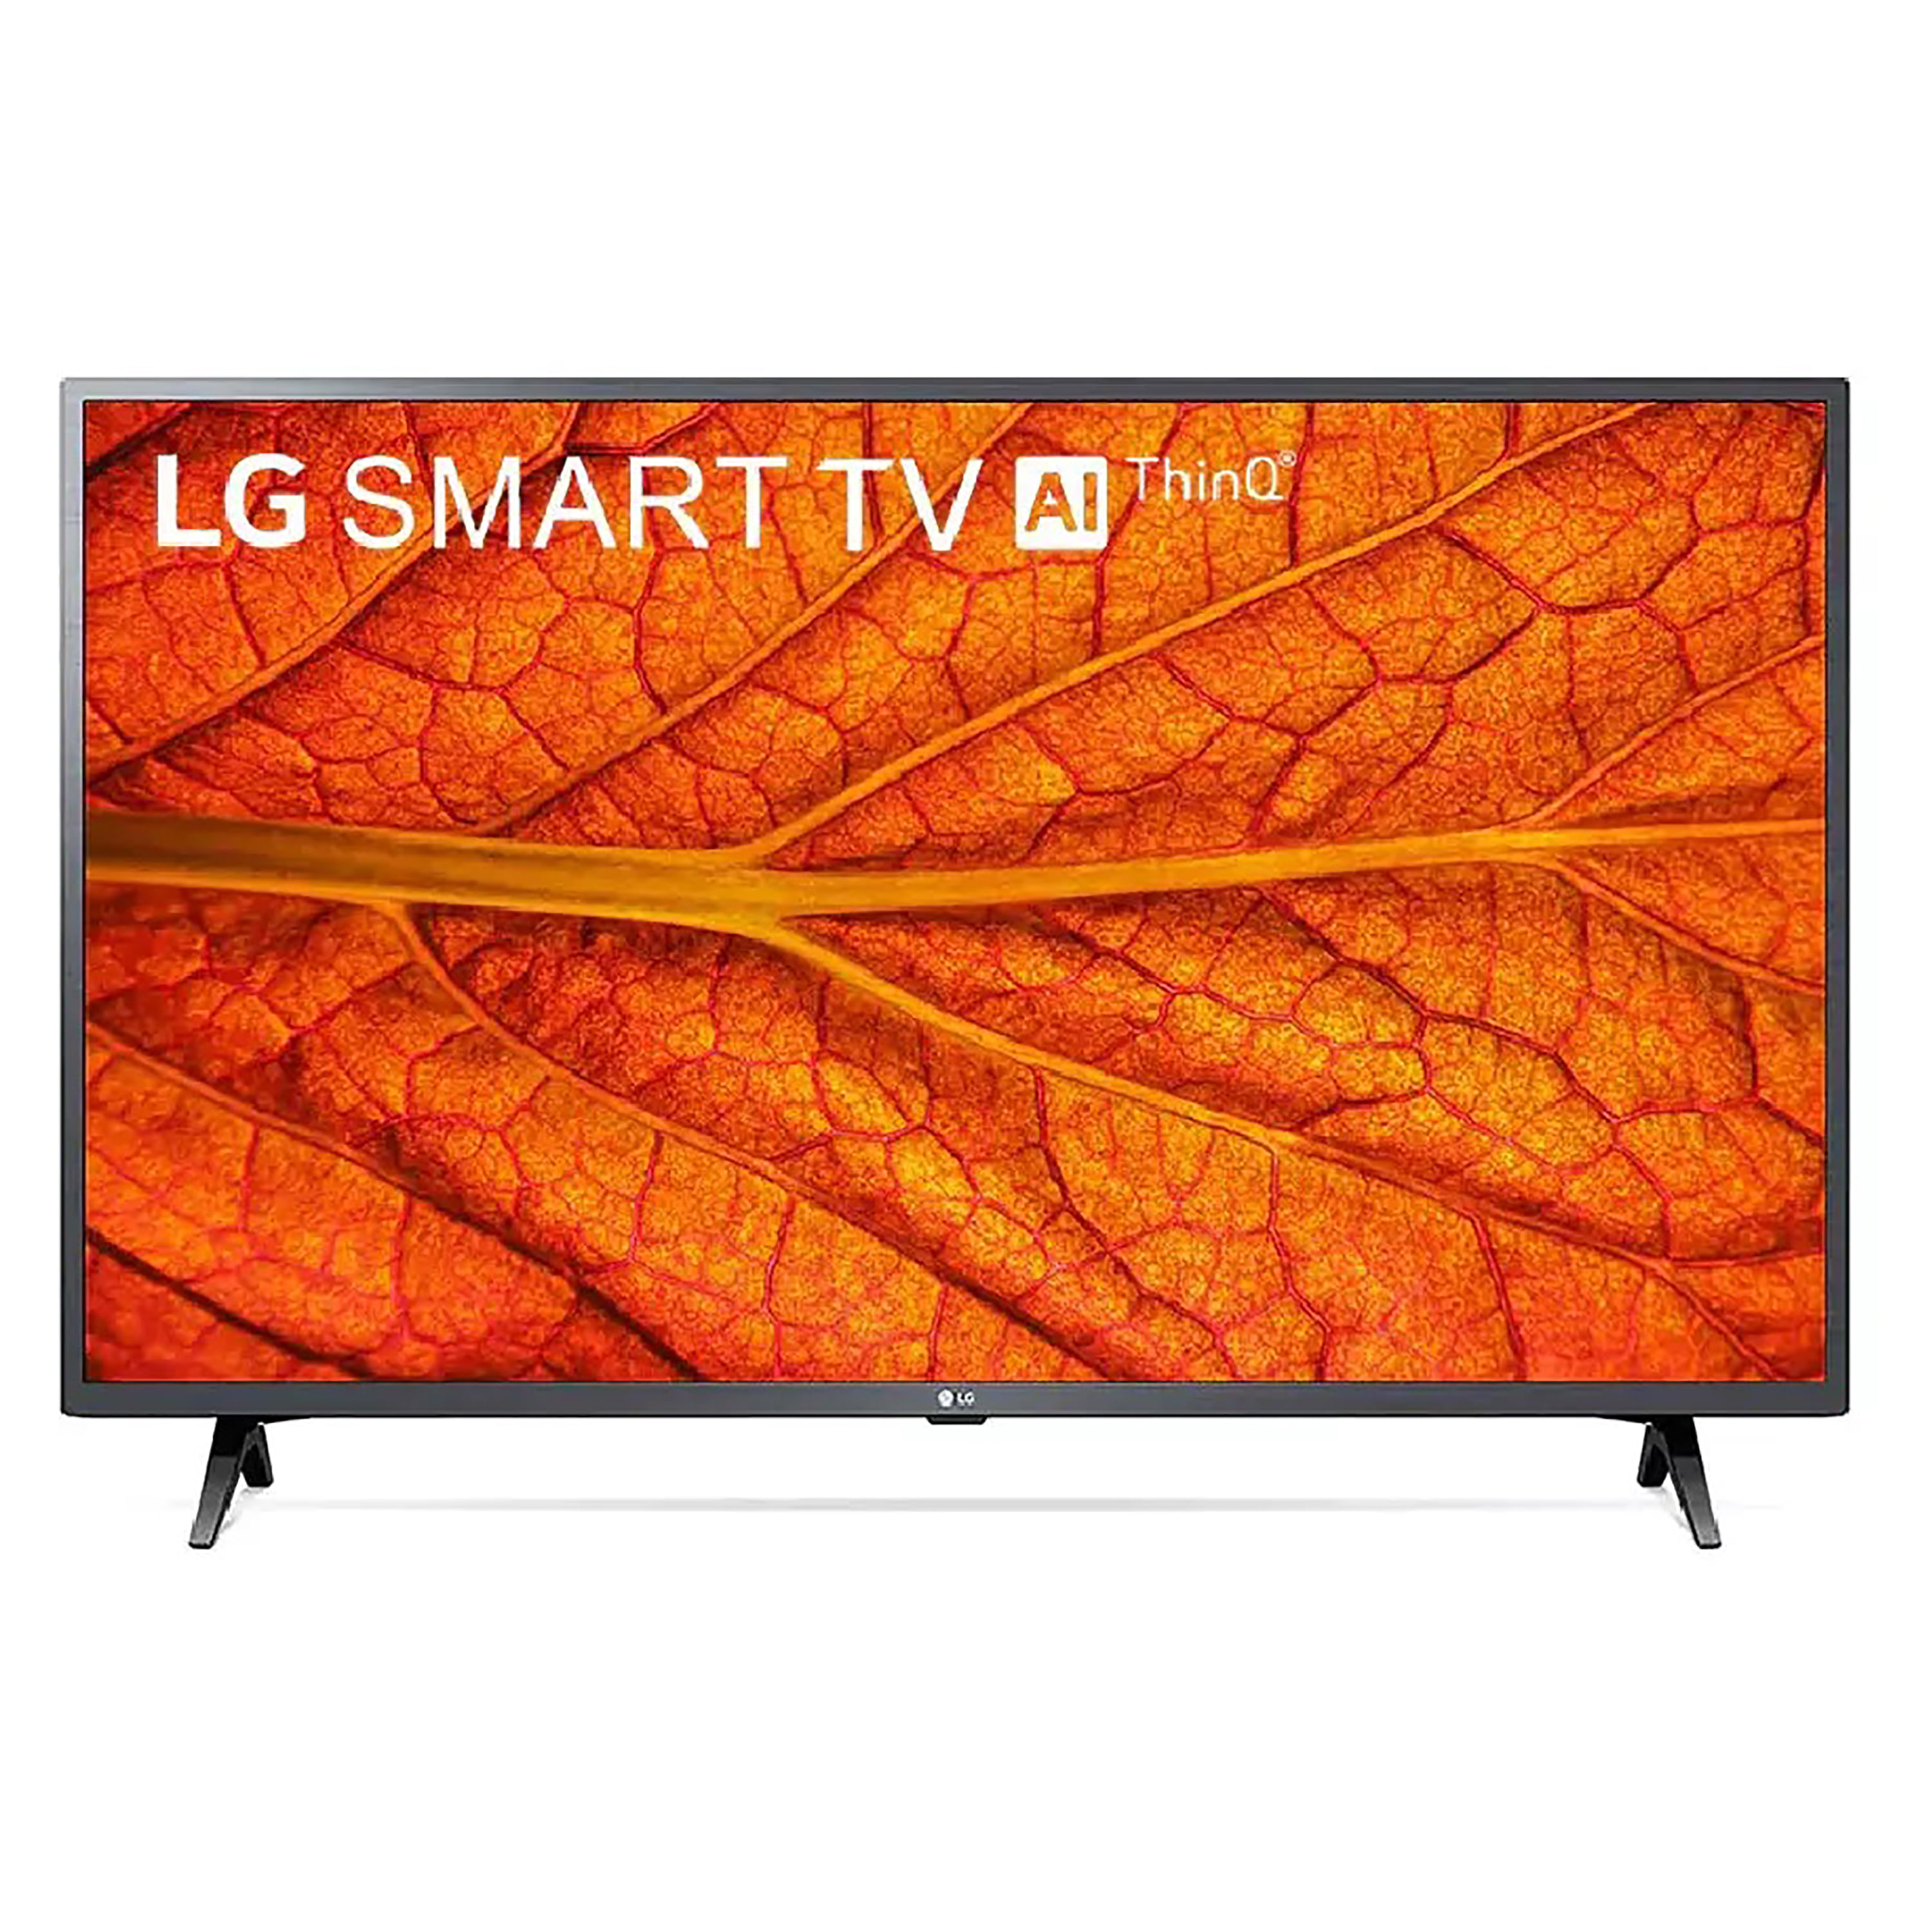 Tv lg smart tv 32 pulgadas led sellado en Lima 【 OFERTAS Diciembre 】, Clasf imagen-y-sonido